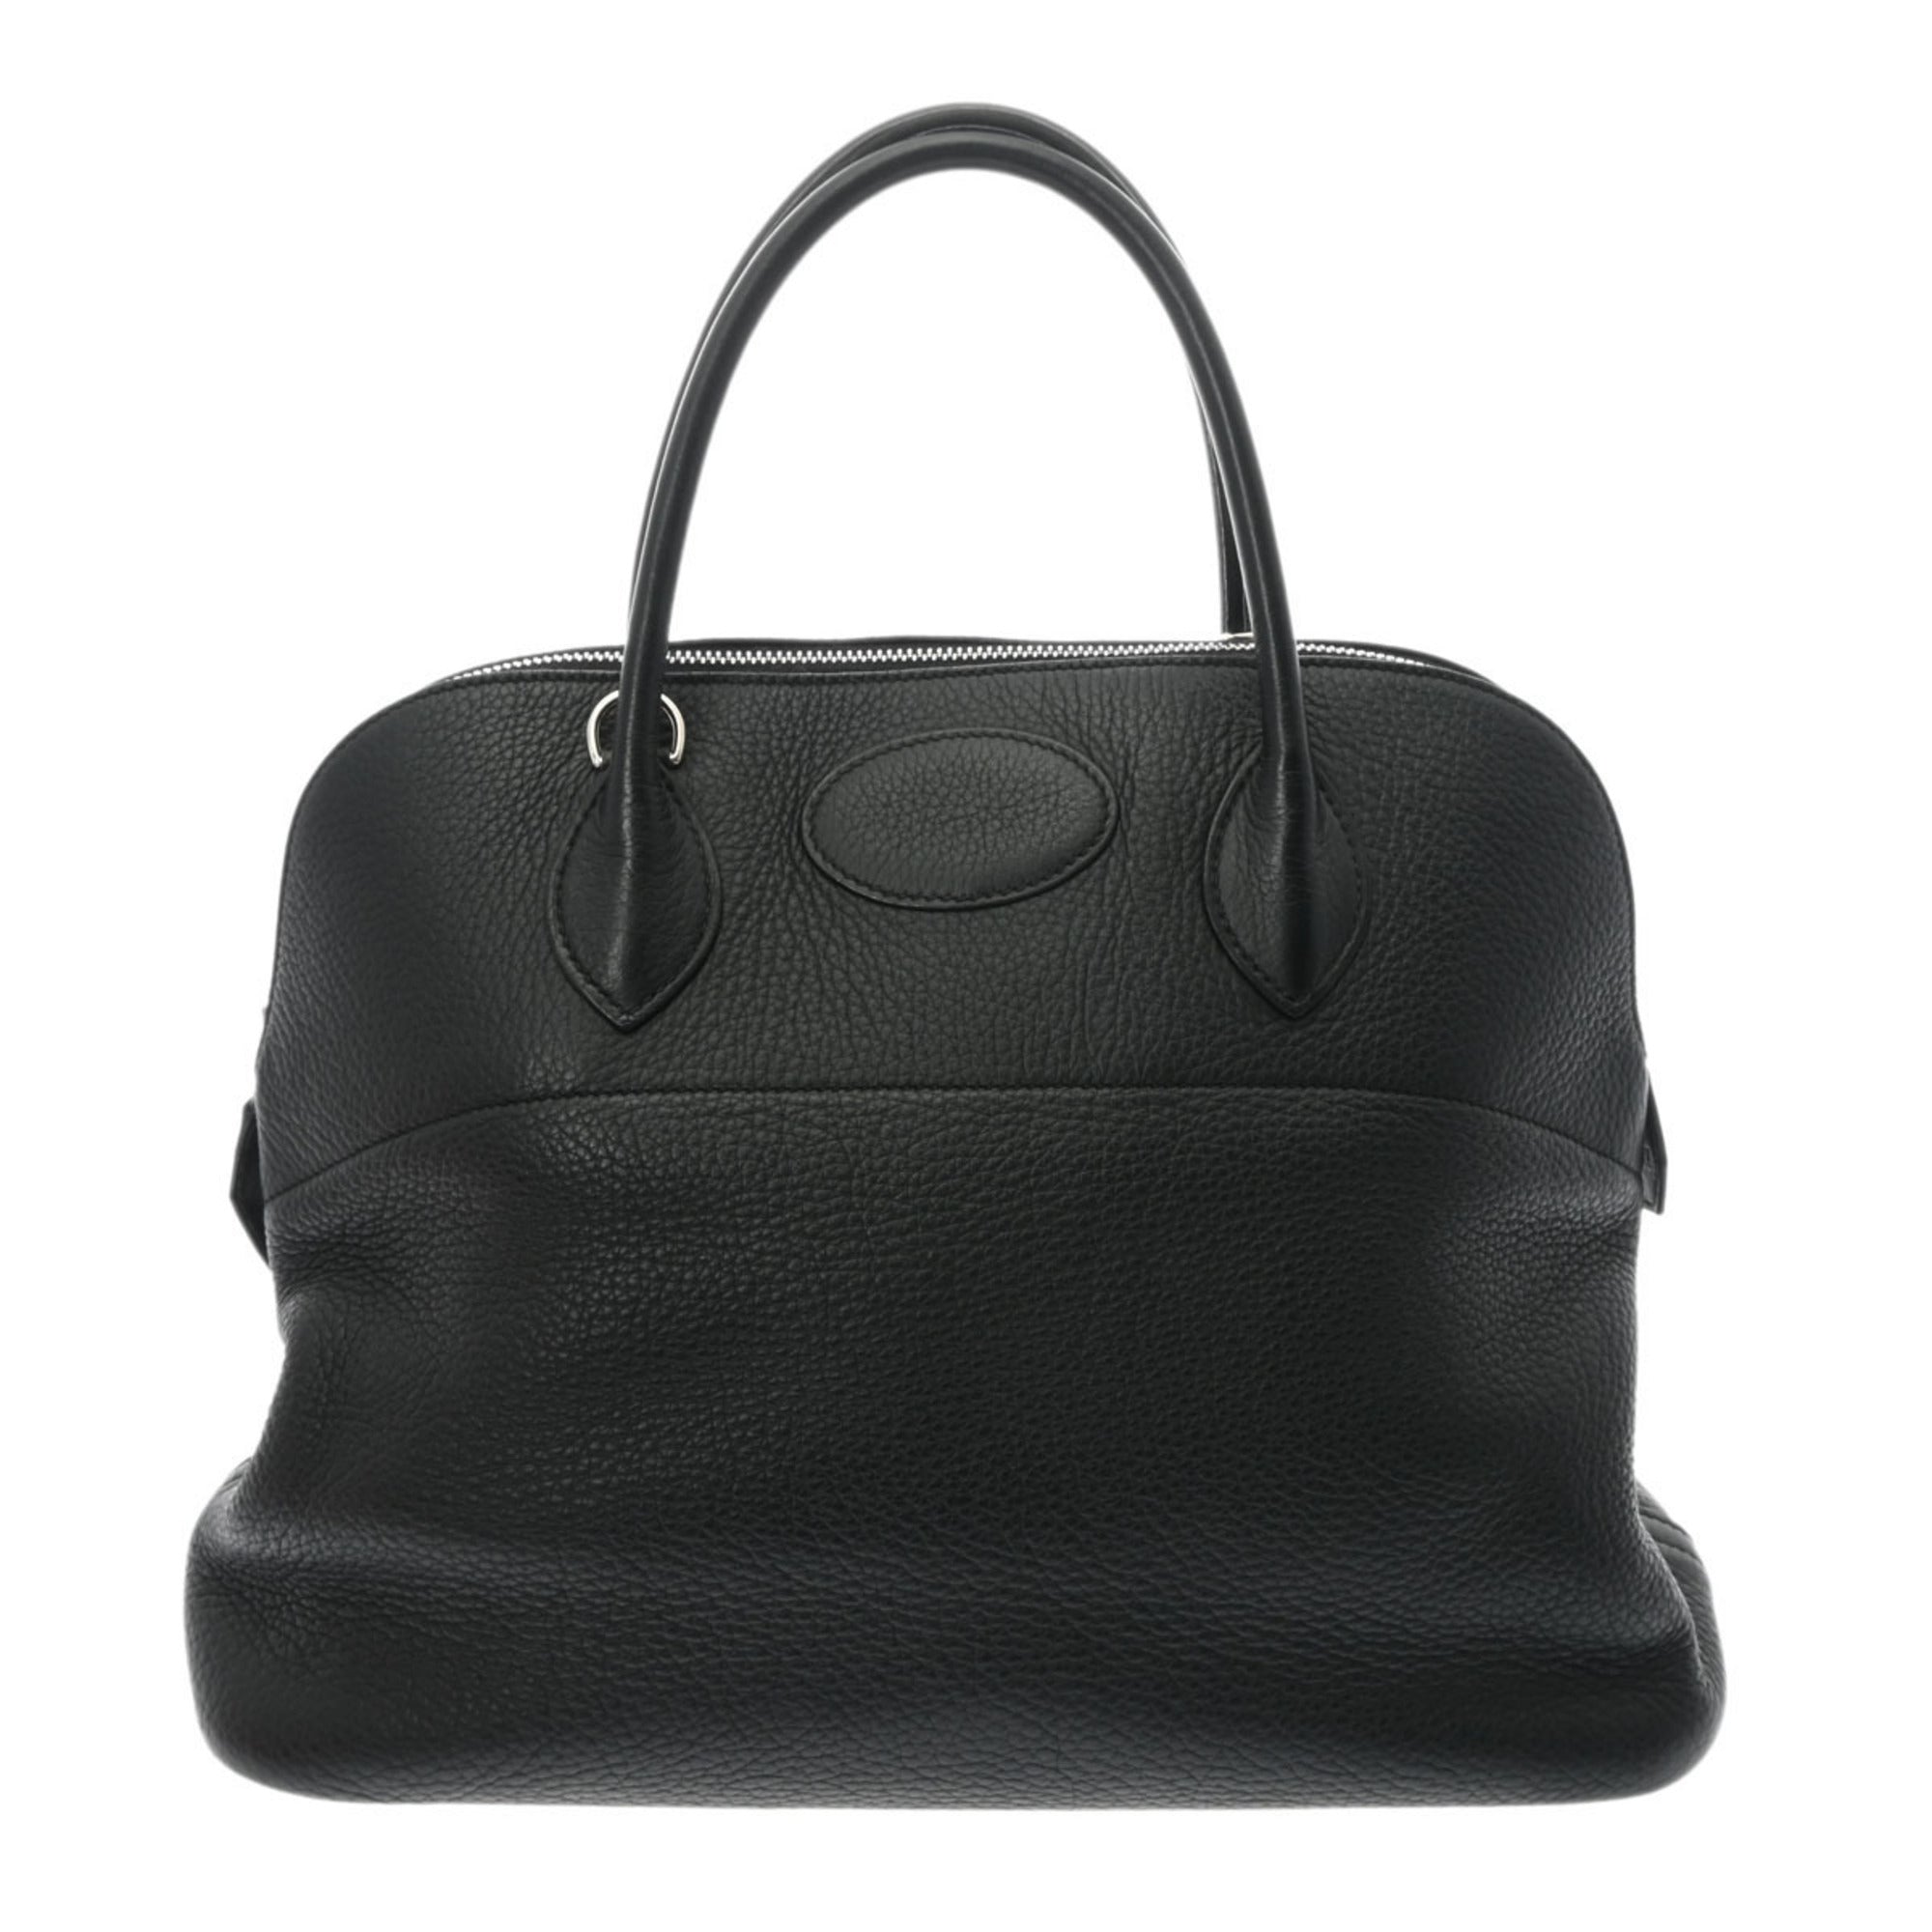 Hermès Envelope Handbags | Mercari